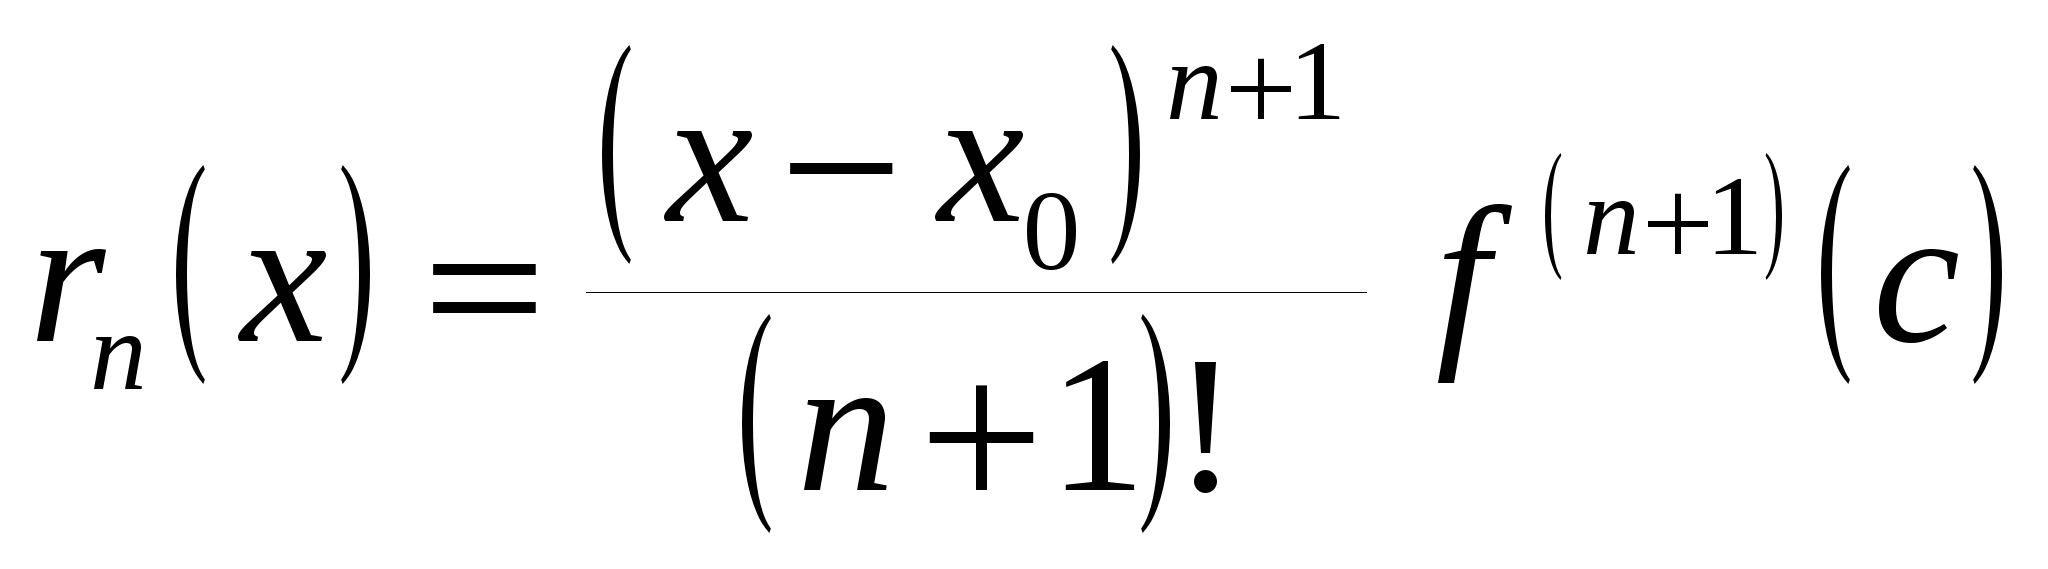 формула маклорена с остаточным членов в форме пеано фото 8